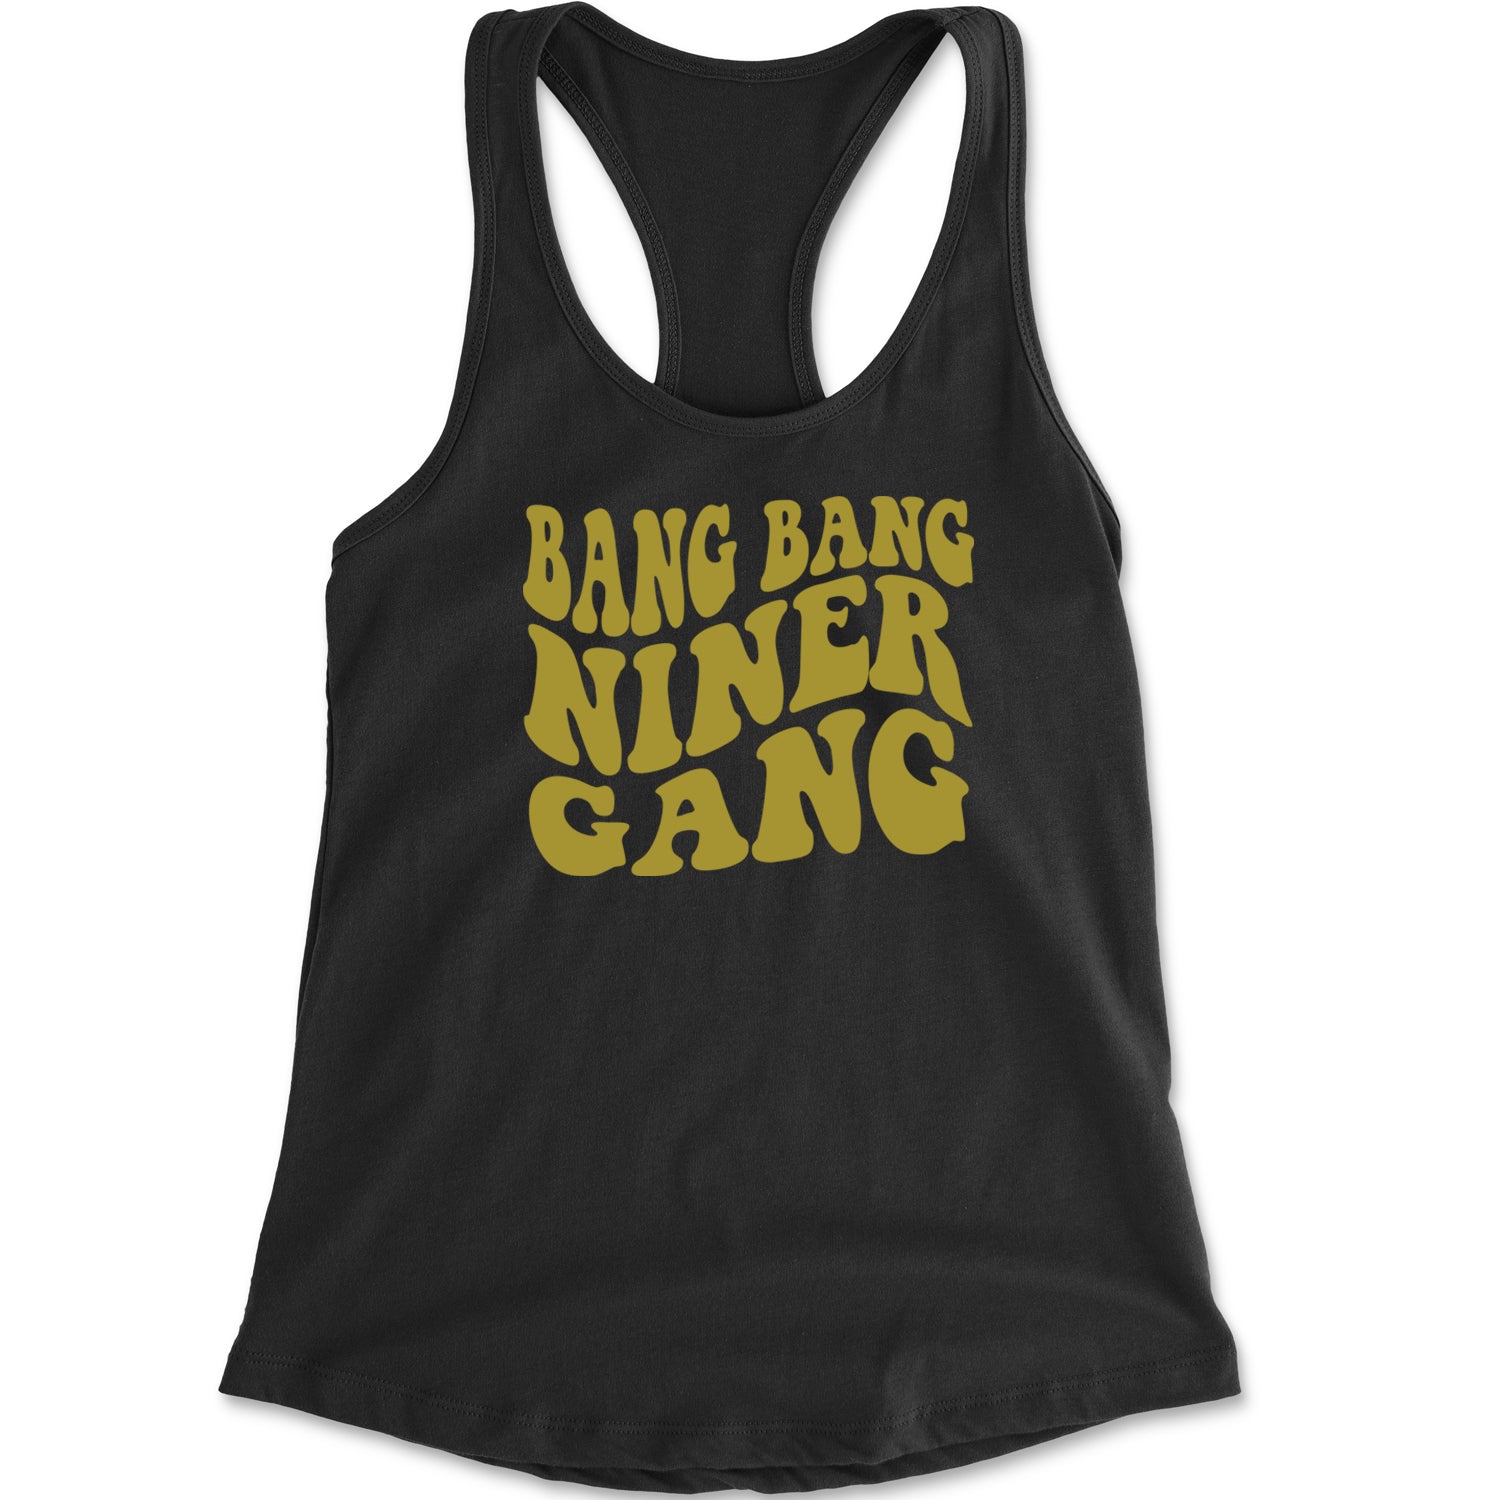 WAVE Bang Bang Niner Gang San Francisco Racerback Tank Top for Women